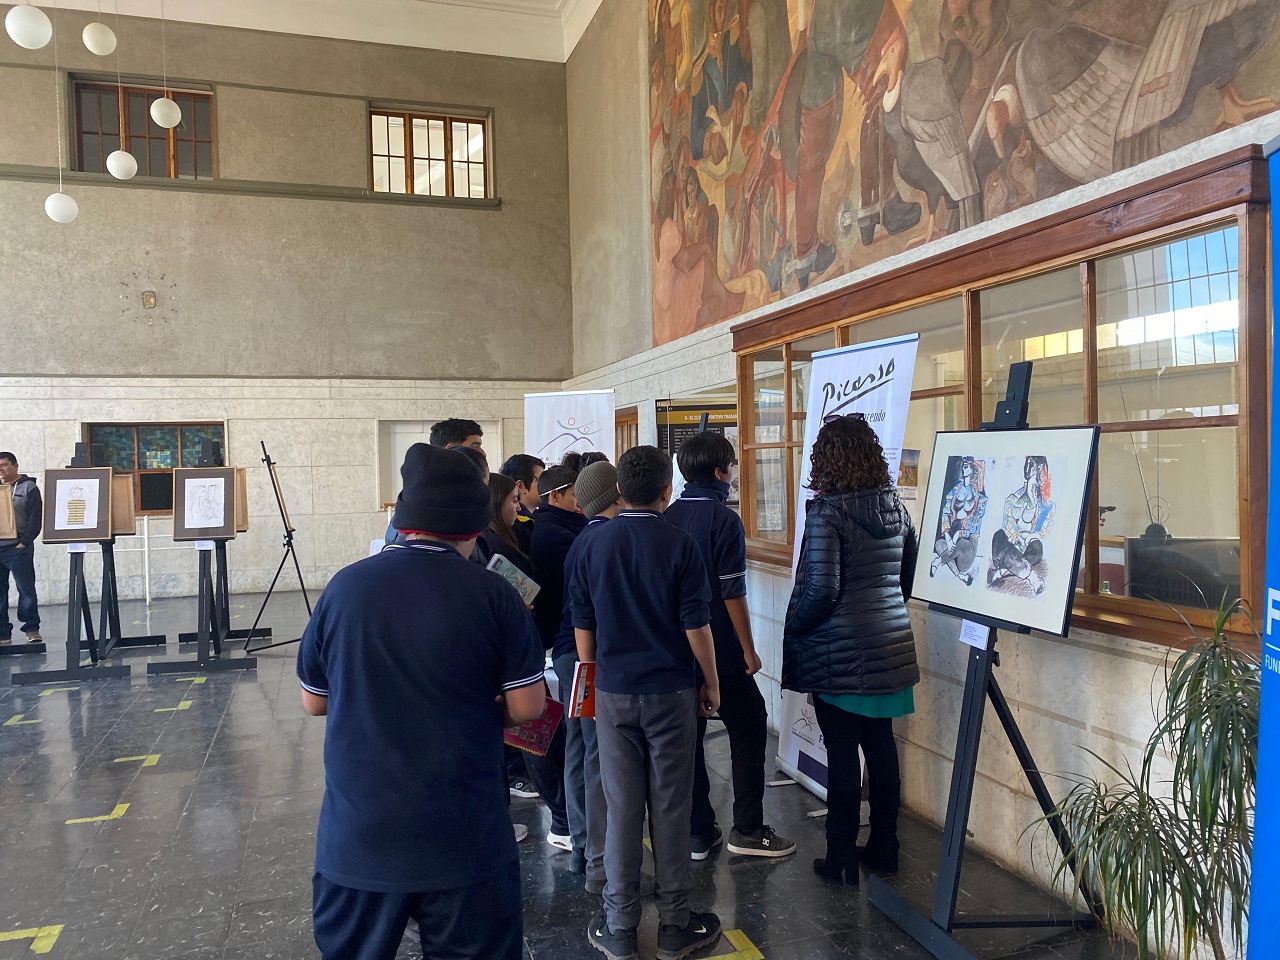 LOS ANDES: Quedan pocos días para visitar la exhibición gratuita “Picasso, aun sorprendo”